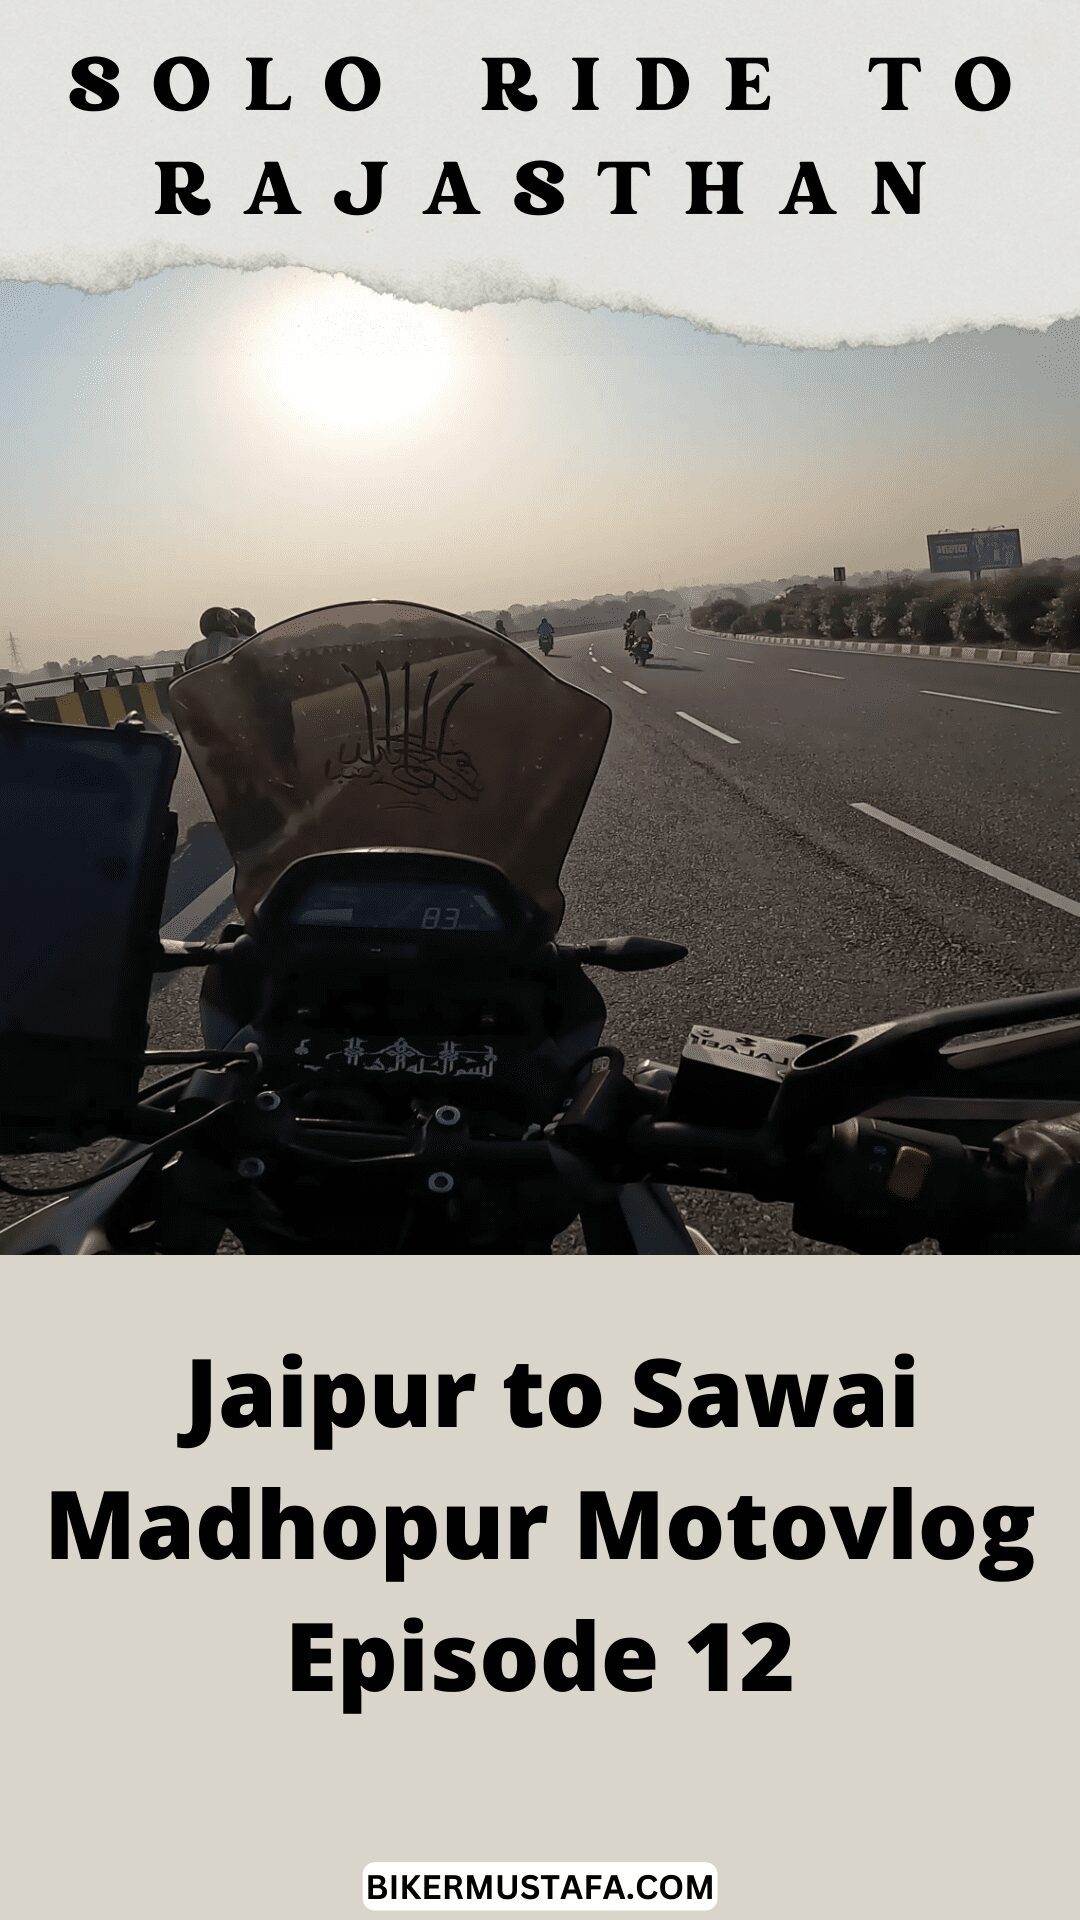 Rajasthan Ride Jaipur to Sawai Madhopur Motovlog Episode 12